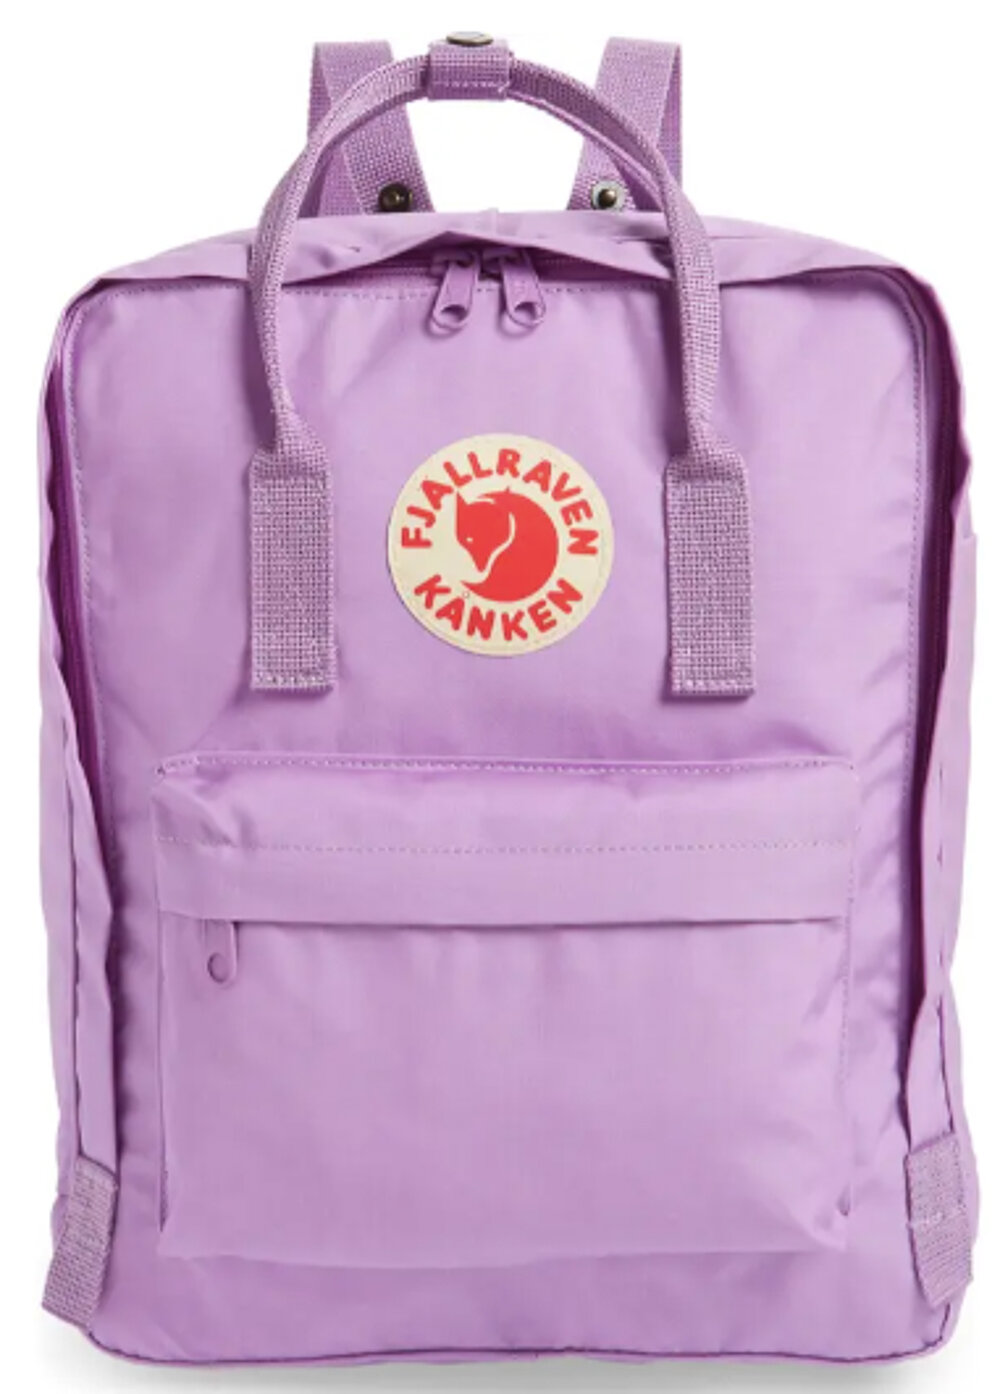 (3) Fjällräven Kånken Water Resistant Backpack